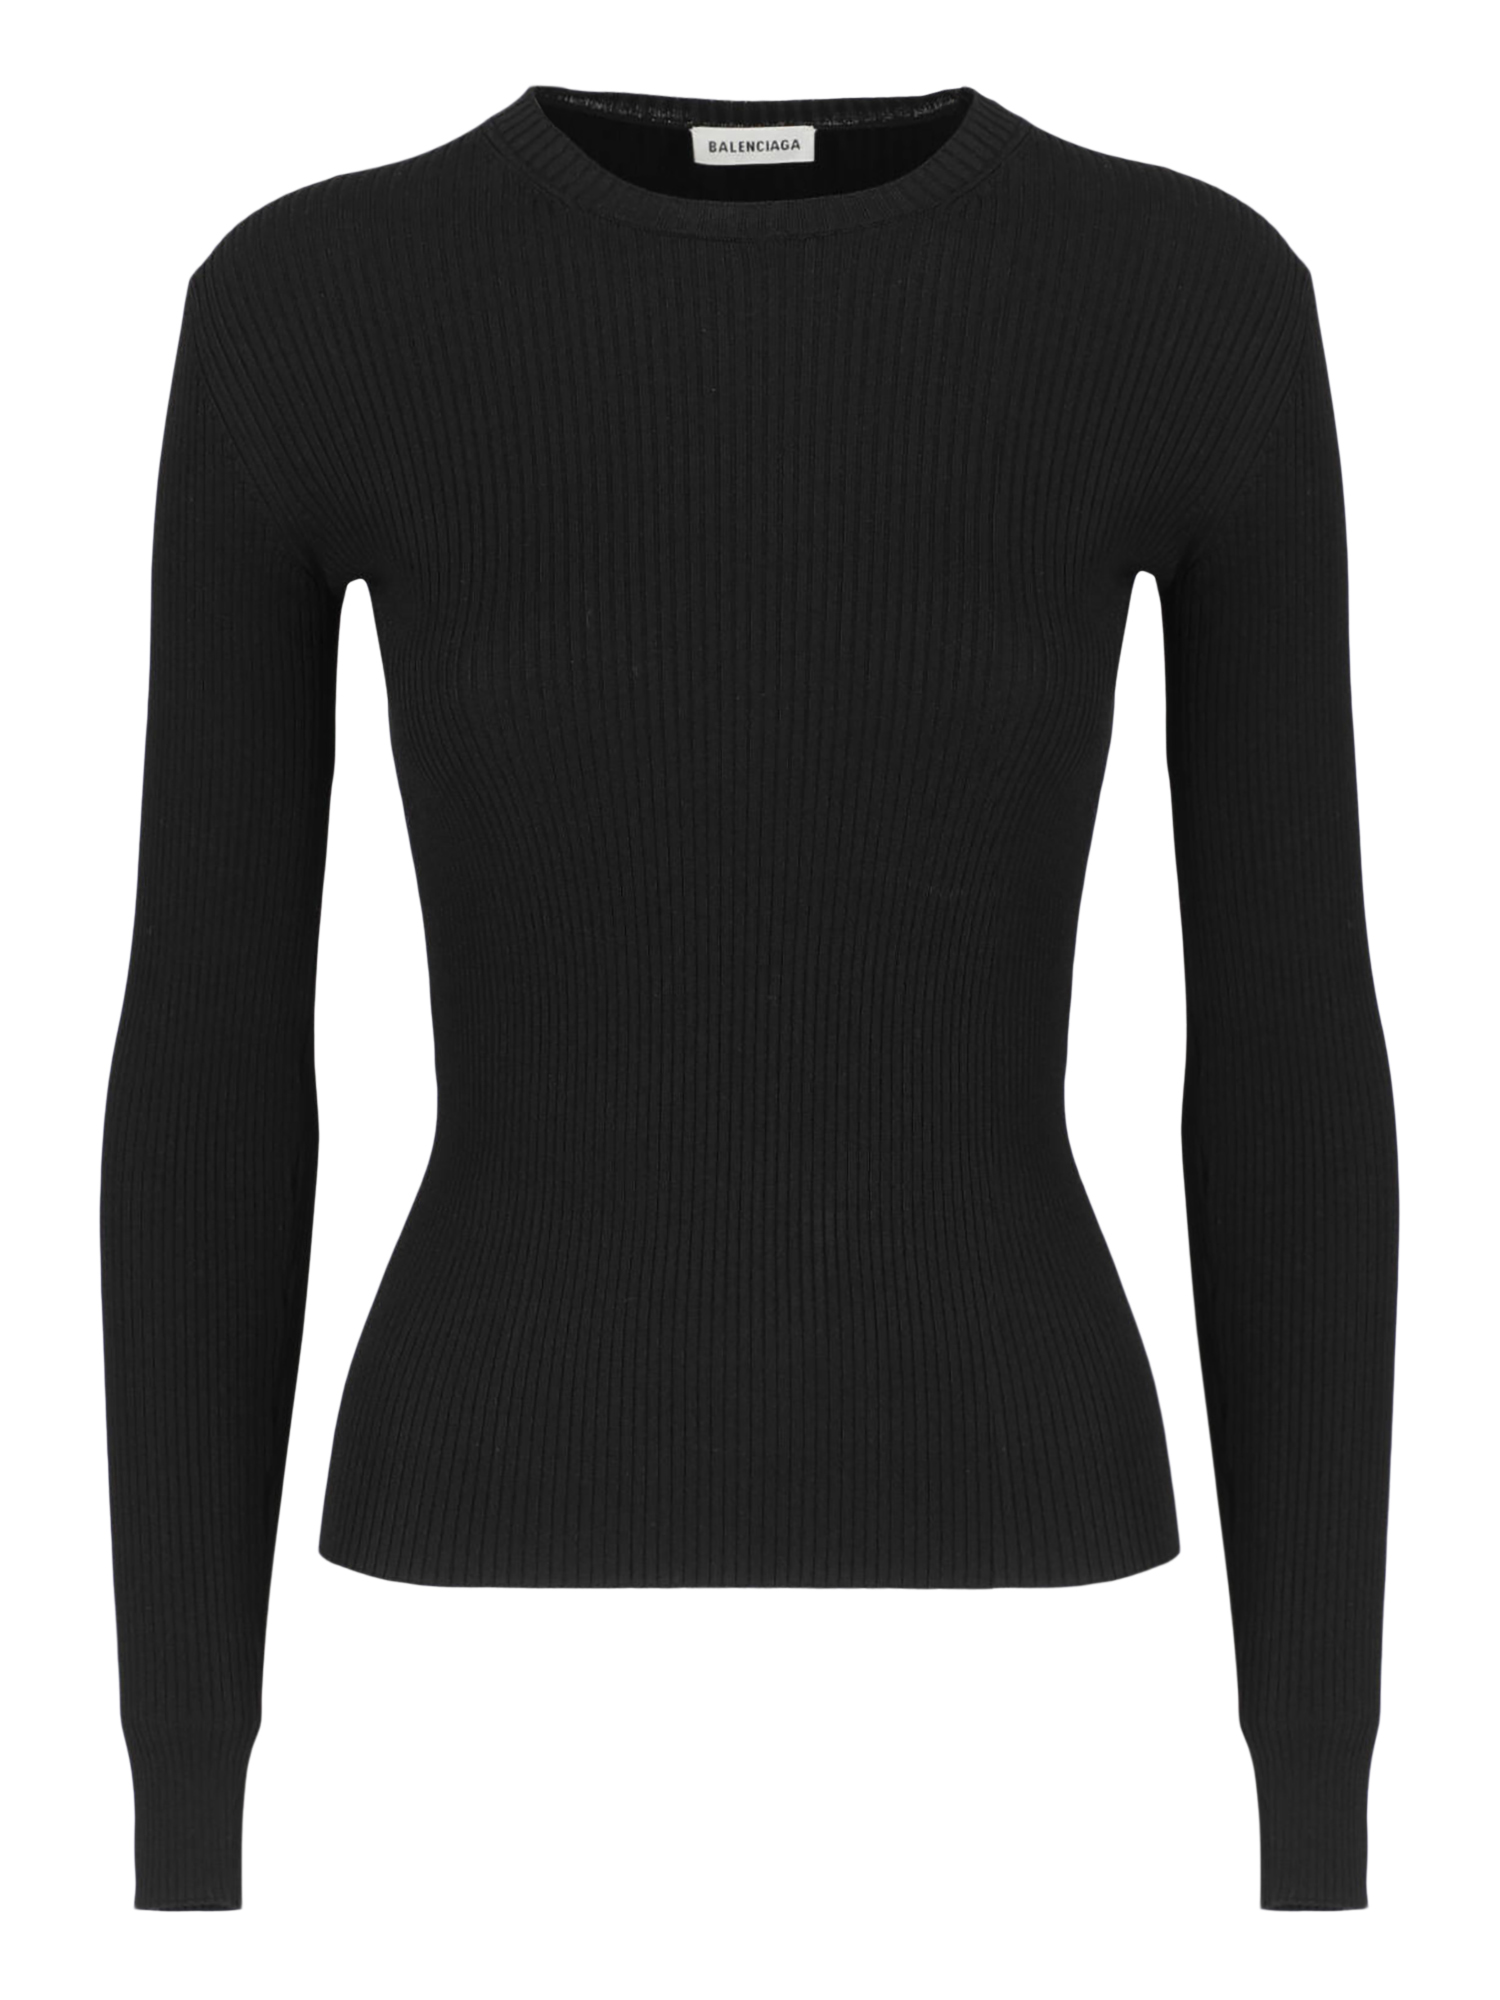 T-shirts Et Tops Pour Femme - Balenciaga - En Synthetic Fibers Black - Taille:  -